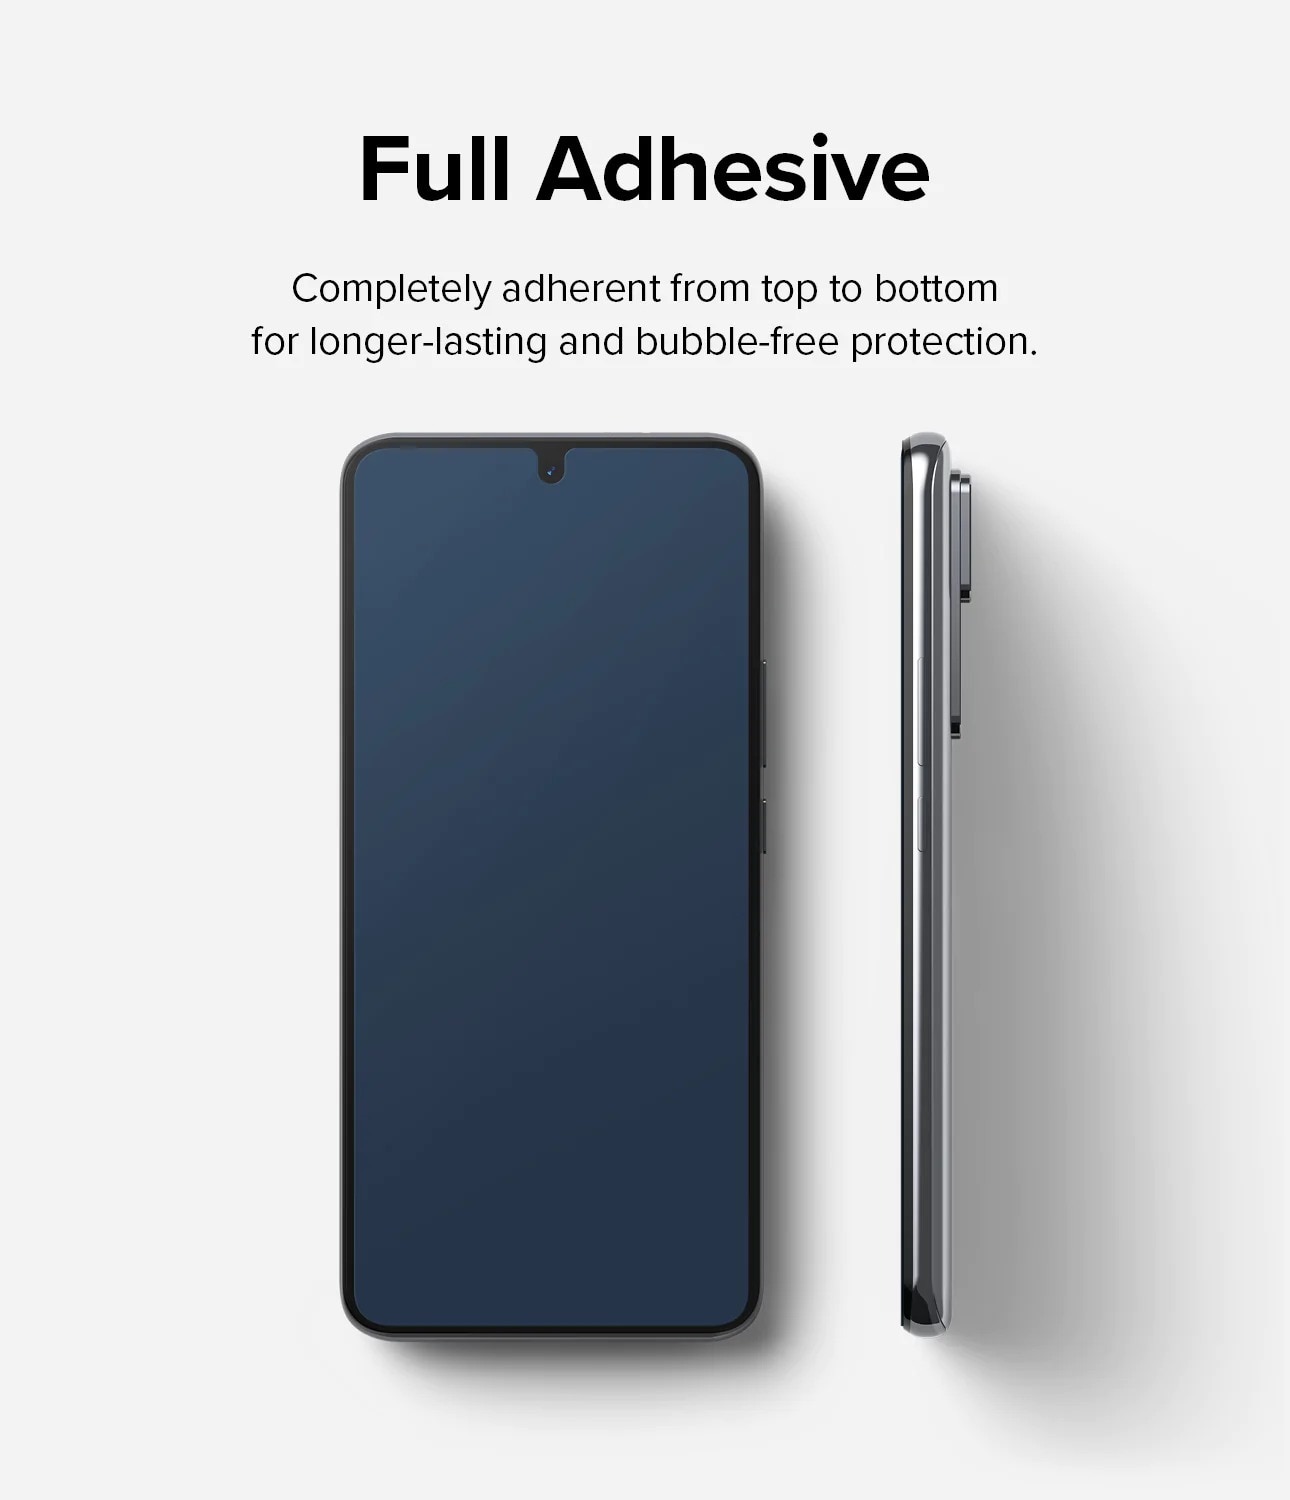 Xiaomi 12T/12T Pro Skärmskydd i glas med monteringsverktyg (2-pack)